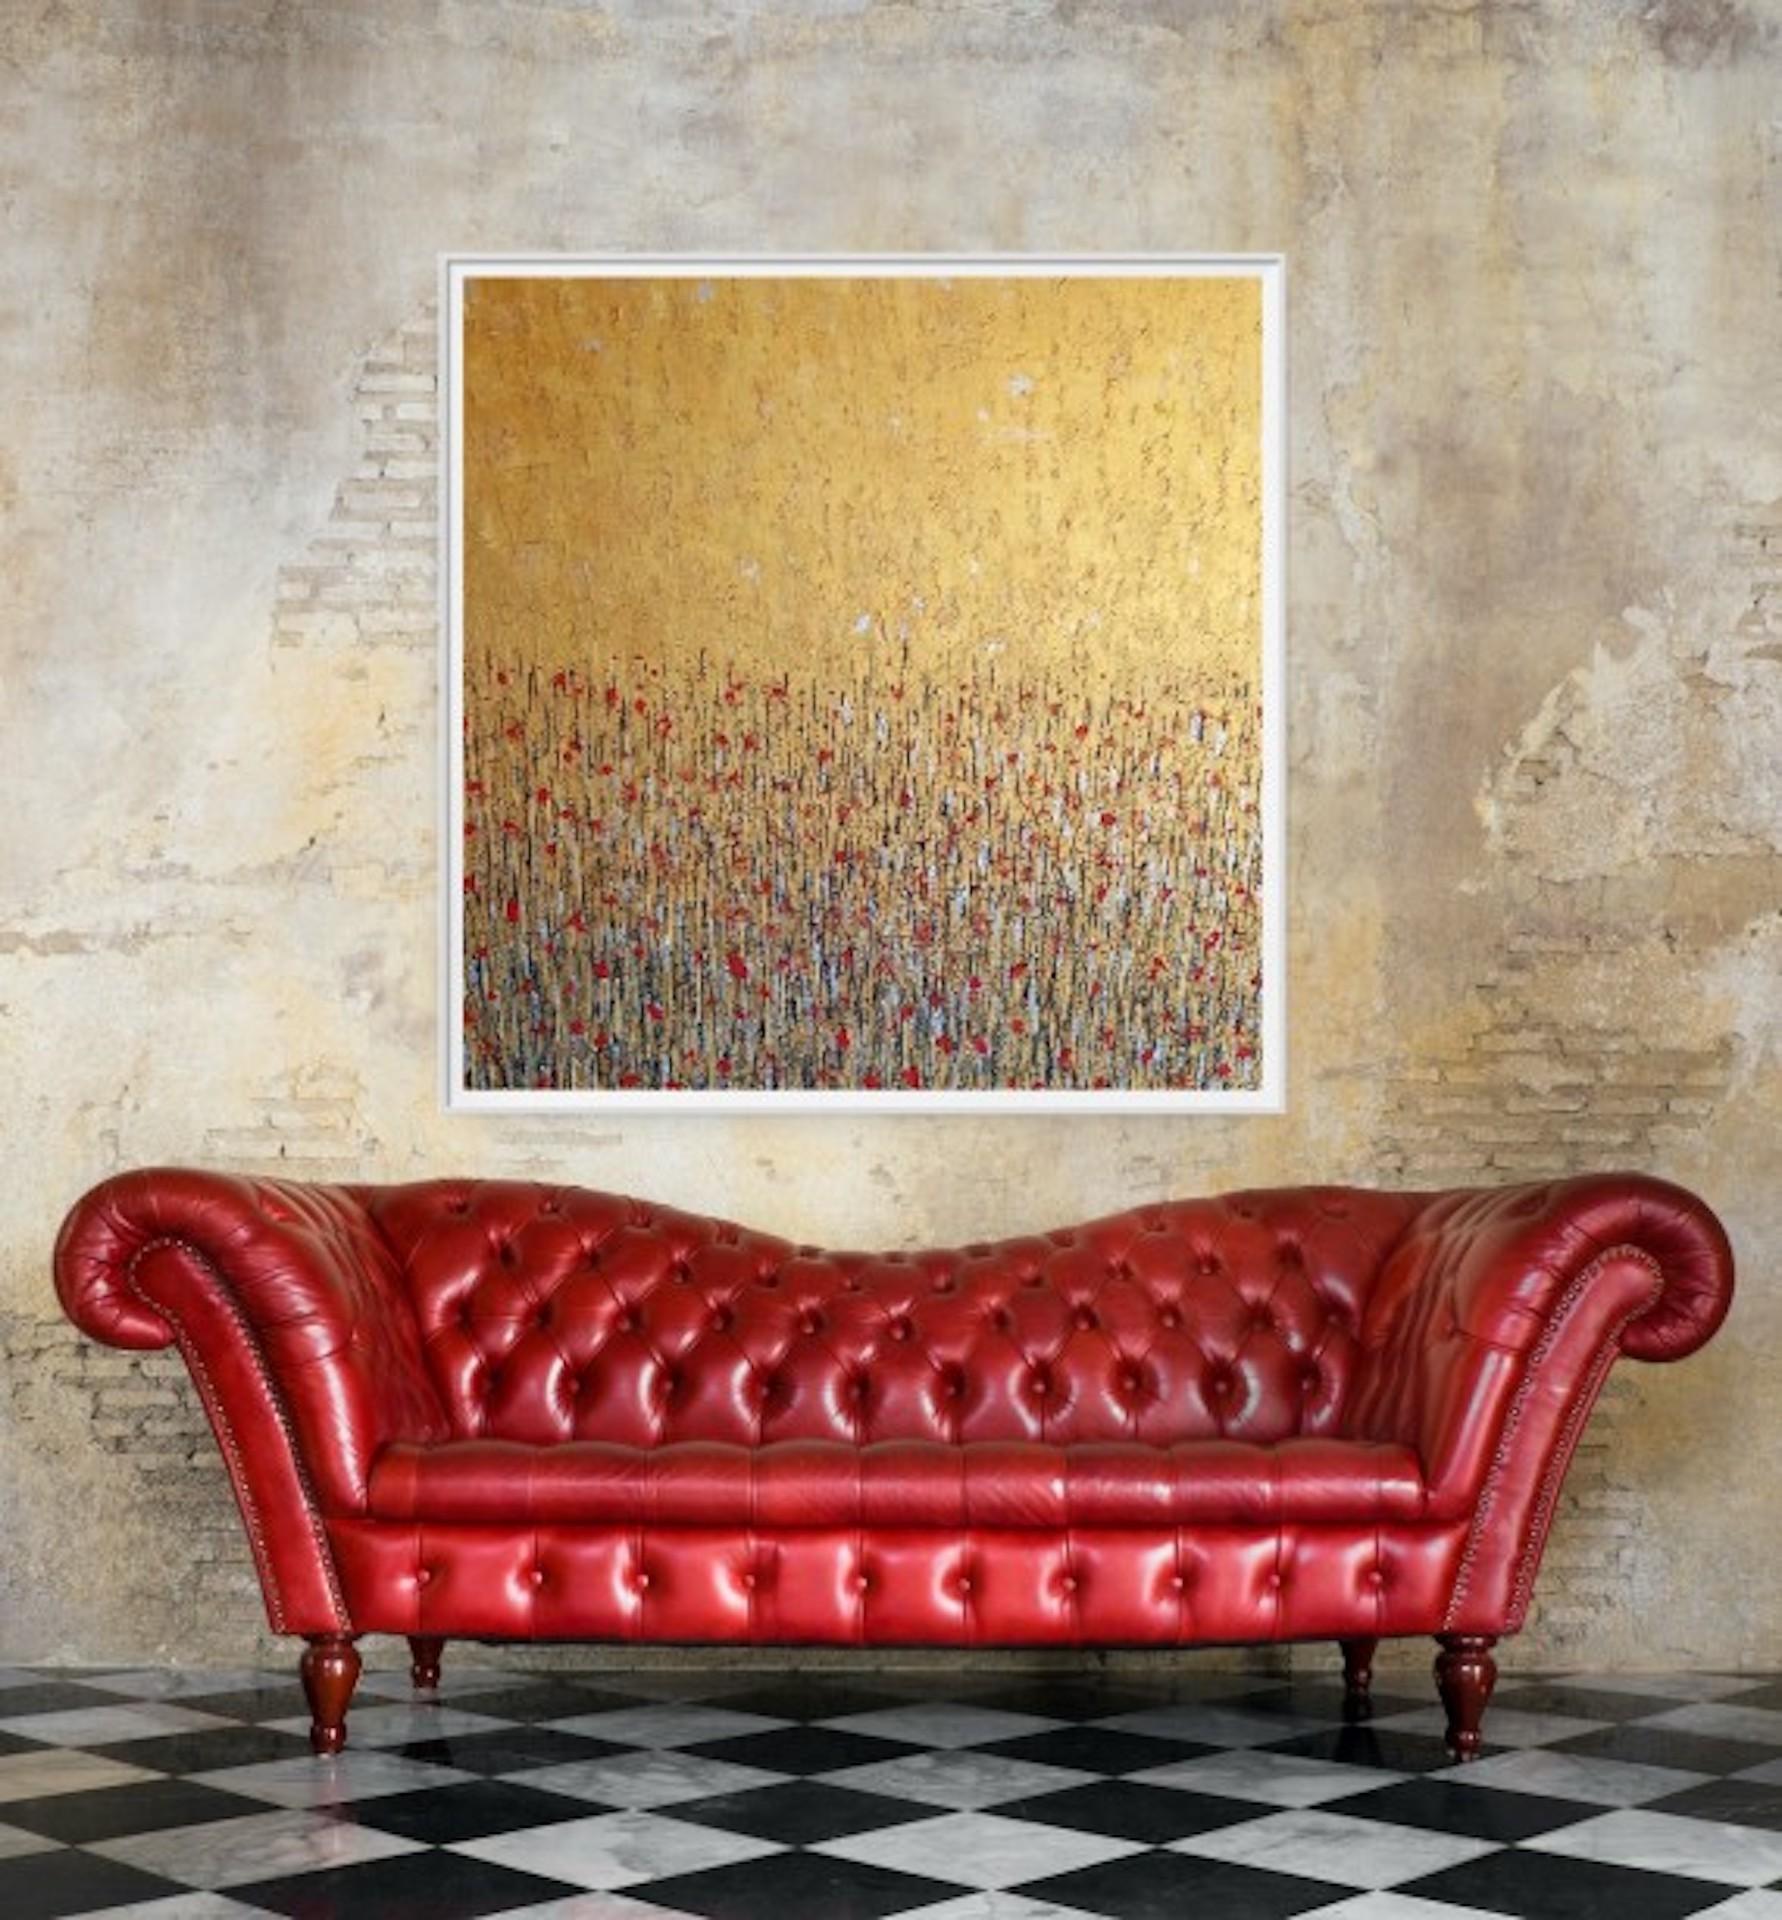 Fields Of Gold, Pixie Willoughby, peinture de paysage florale originale à prix abordable en vente 2